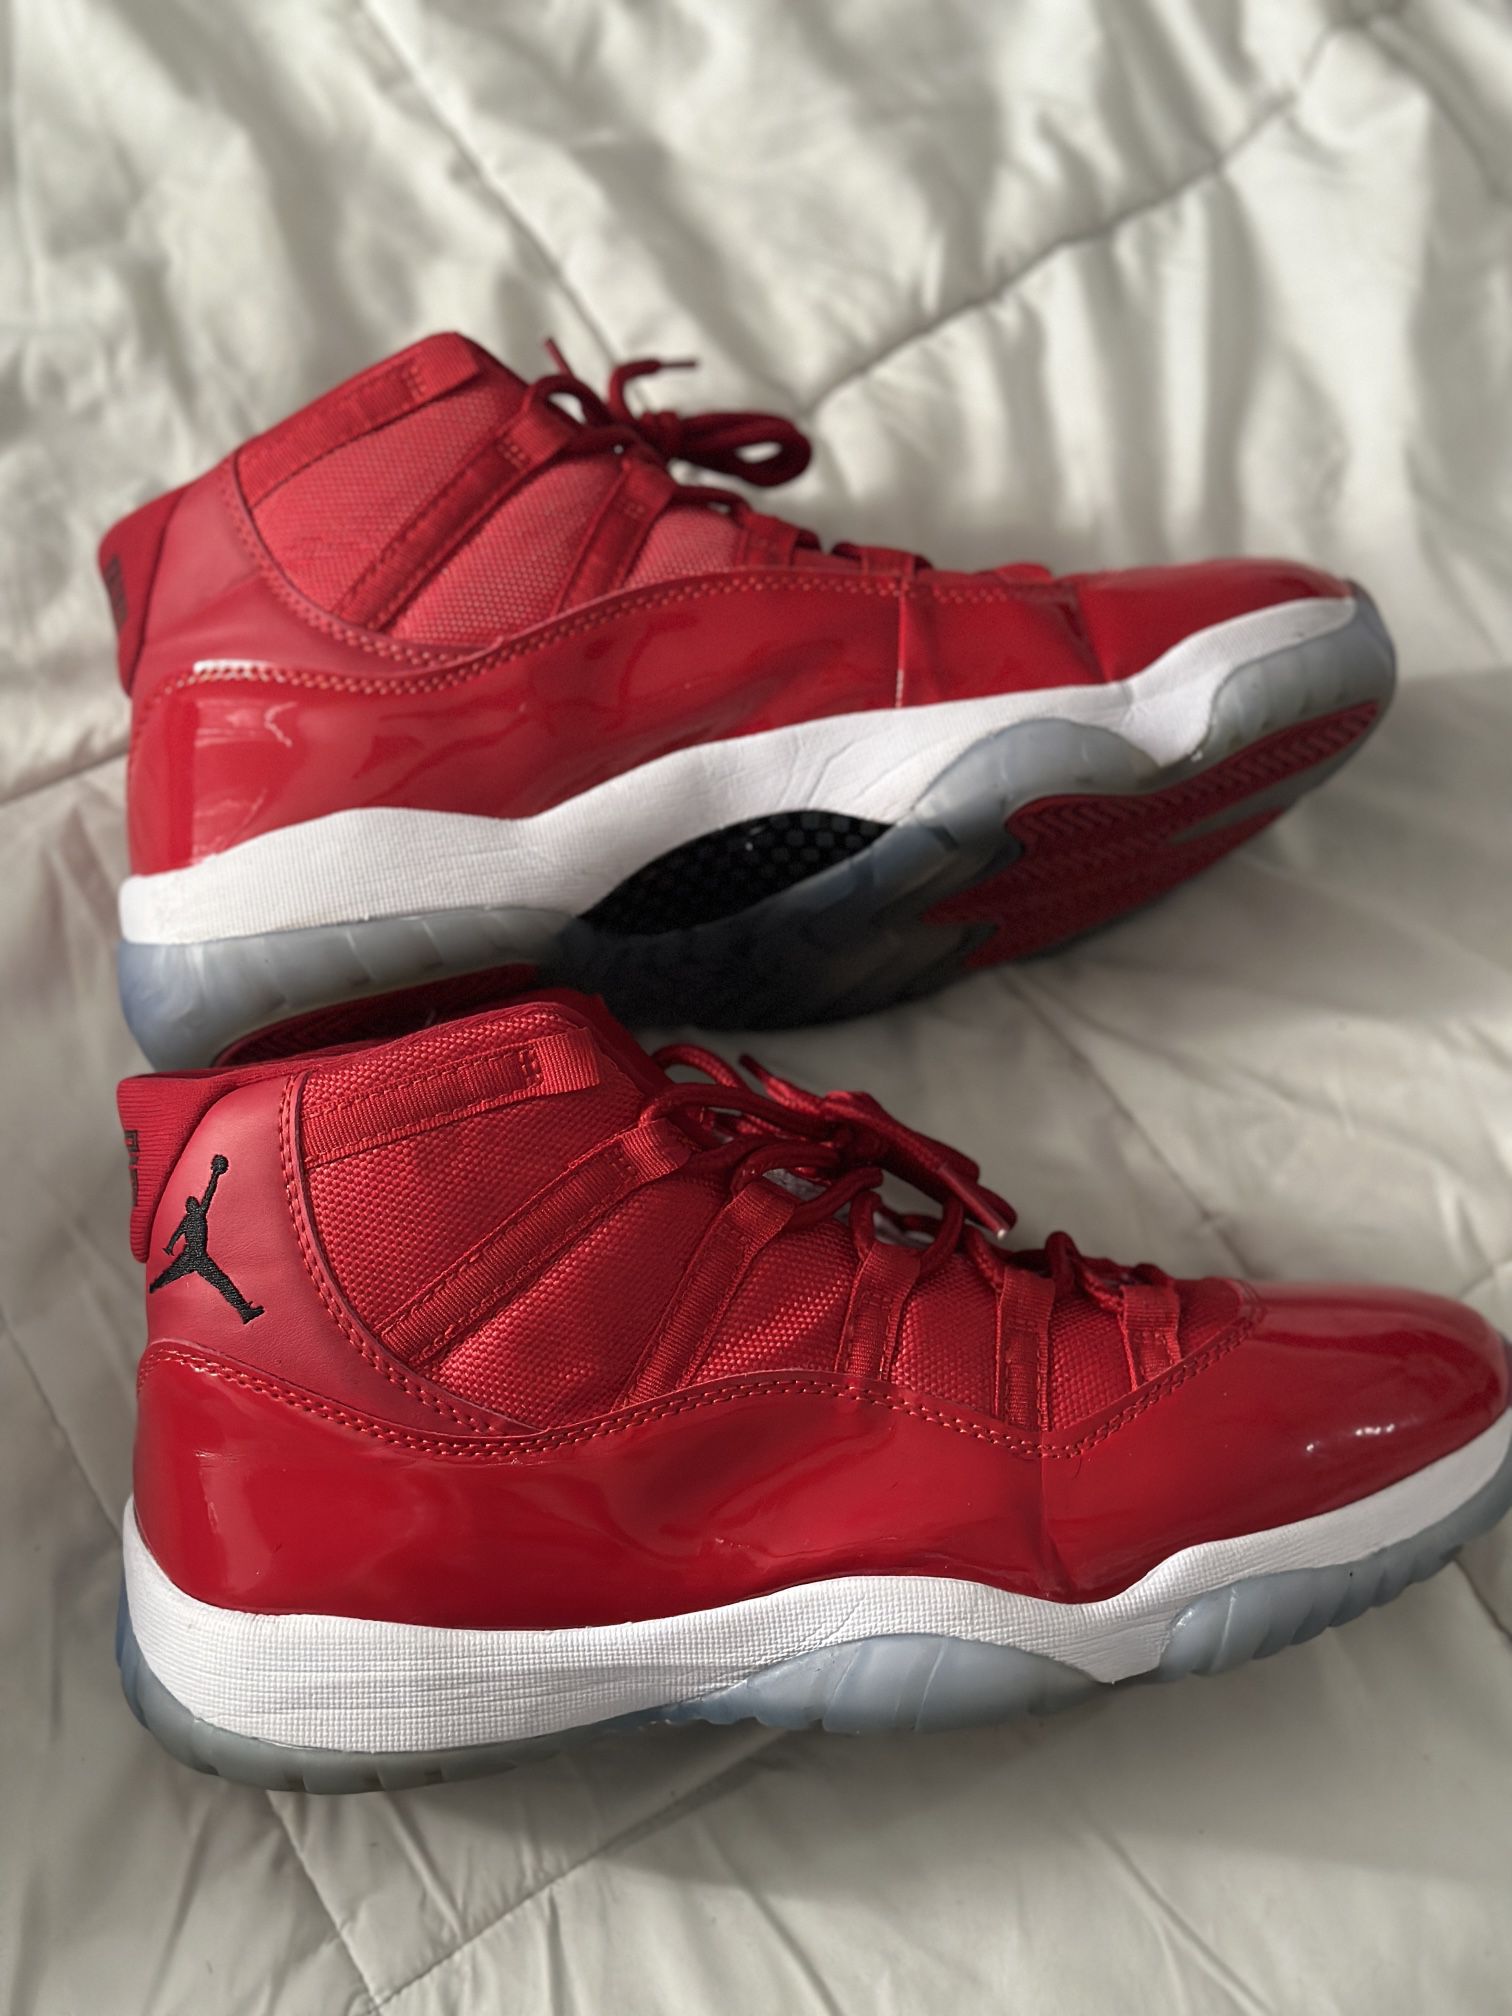 Used Men’s Size 13 Red Jordan 11s